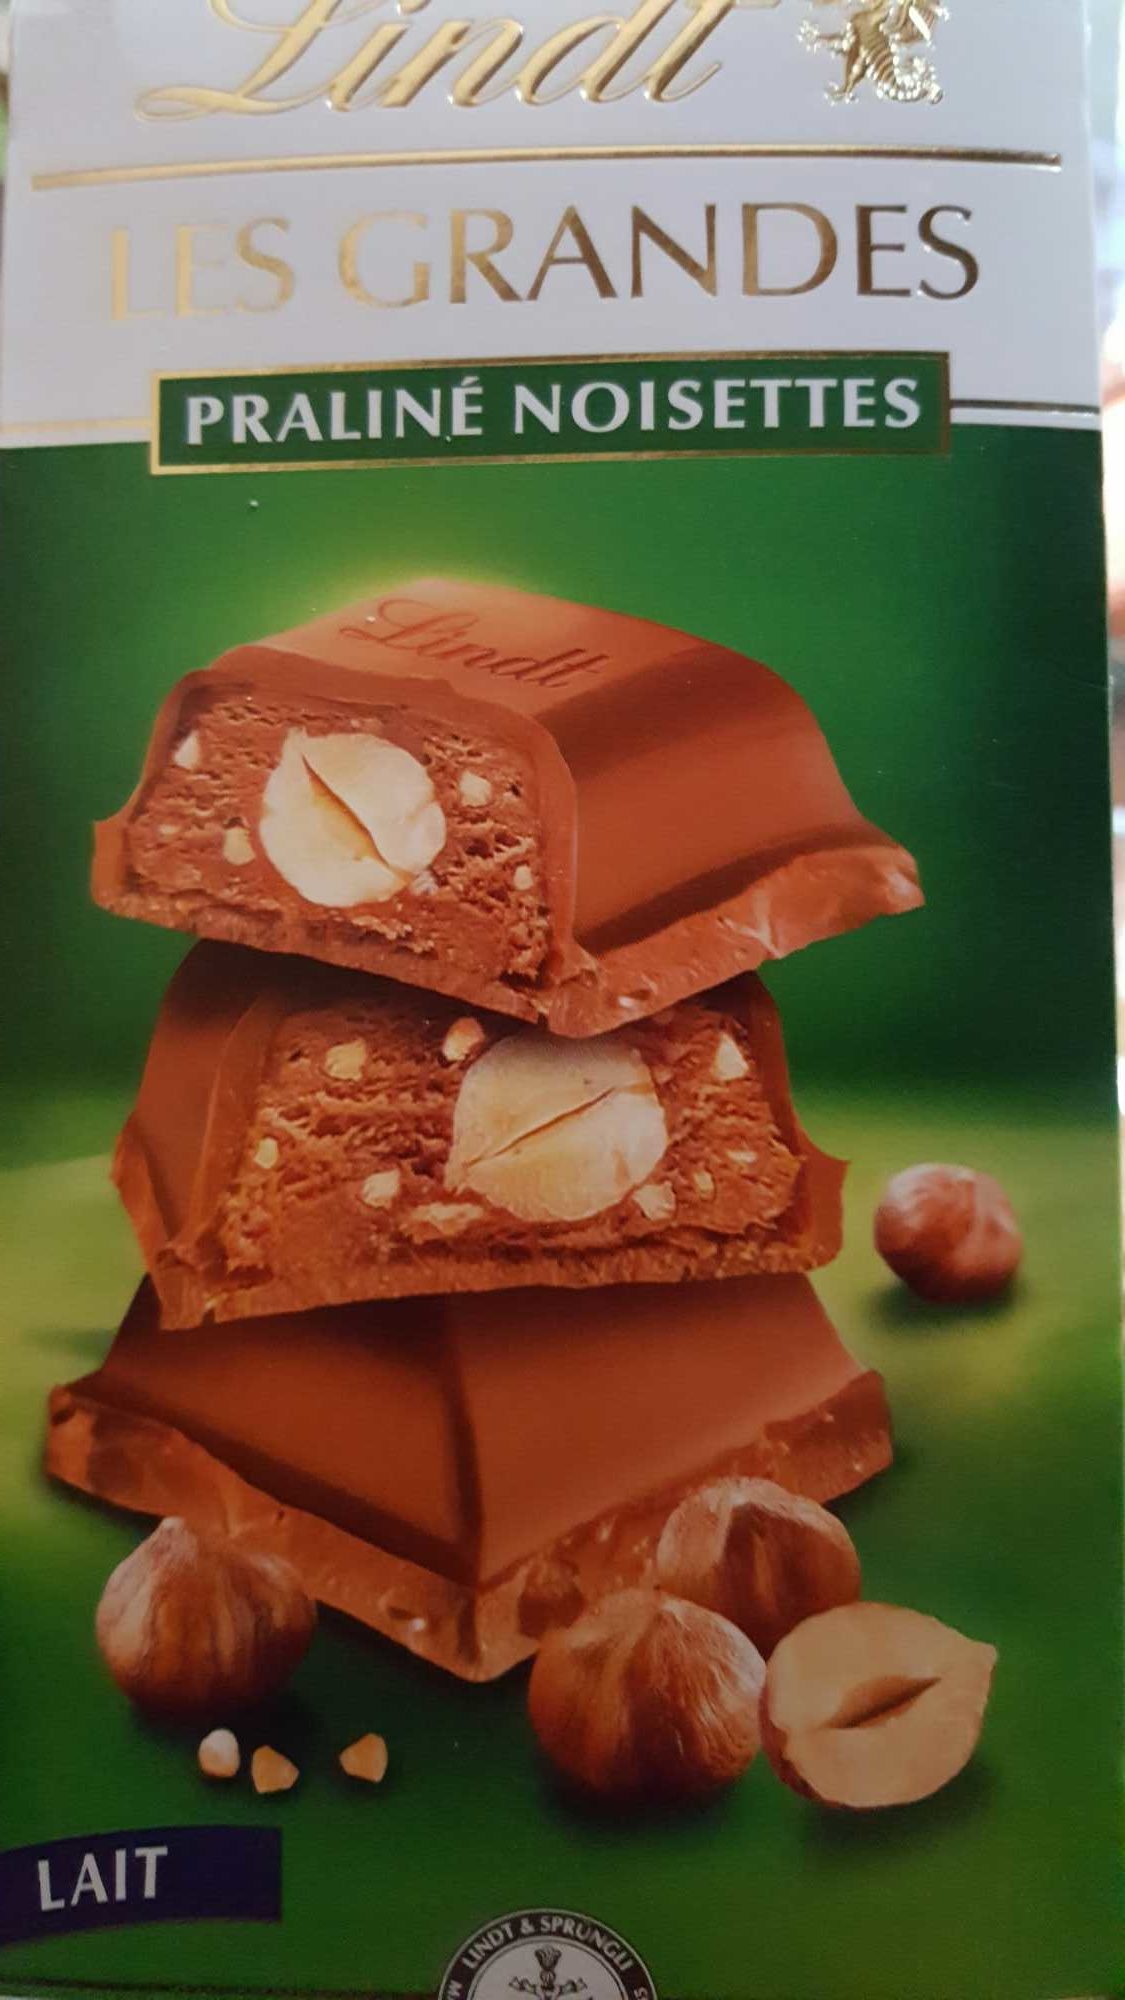 Les Grandes Praliné noisettes - Chocolat au lait - Produit